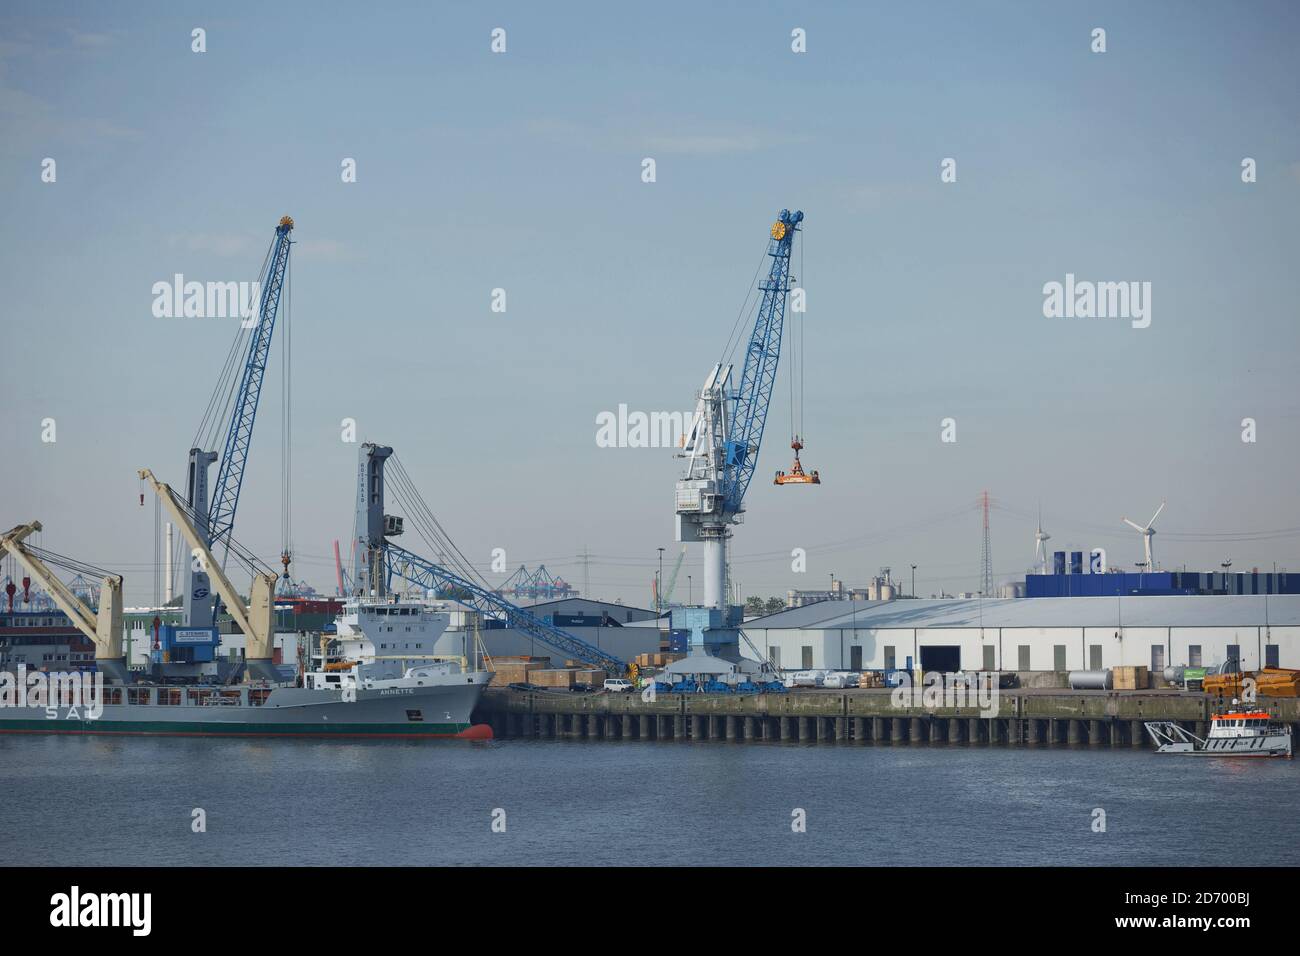 Hamburg, Deutschland - 19. September 2017: Hamburger Hafen an der Elbe, größter Hafen Deutschlands und einer der verkehrsreichsten Häfen Europas Stockfoto